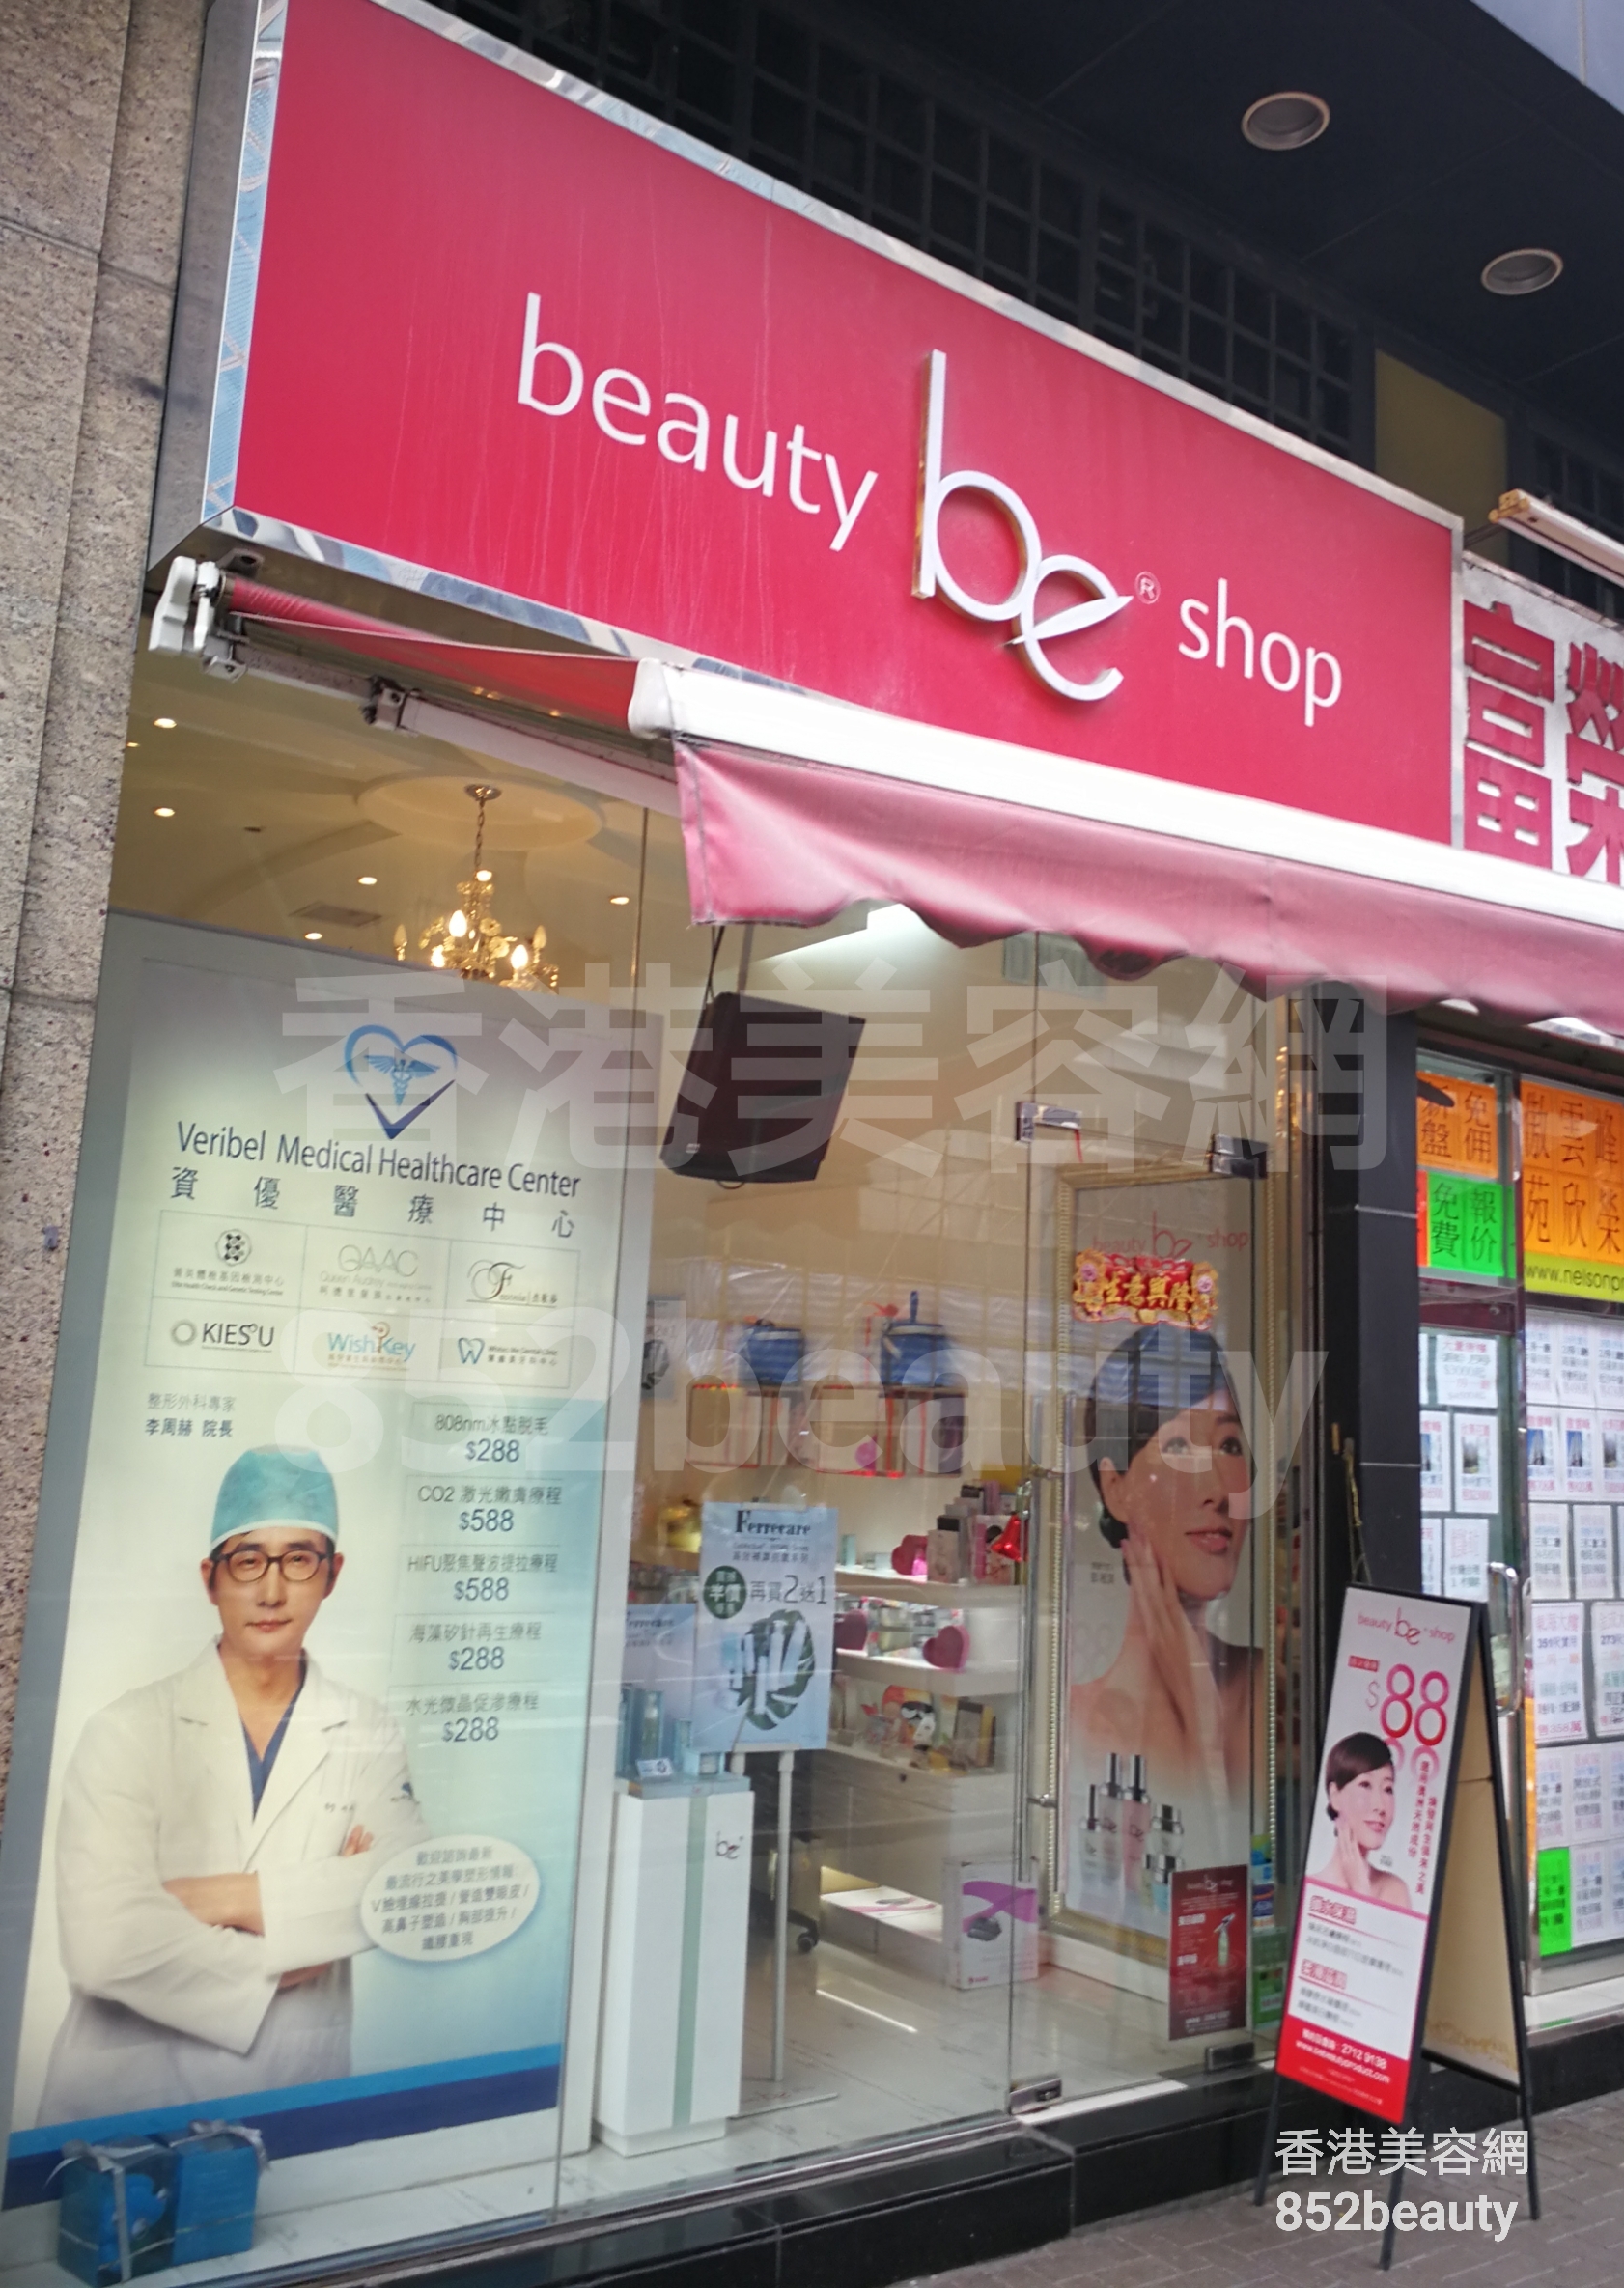 面部护理: be beauty shop (金都豪庭)